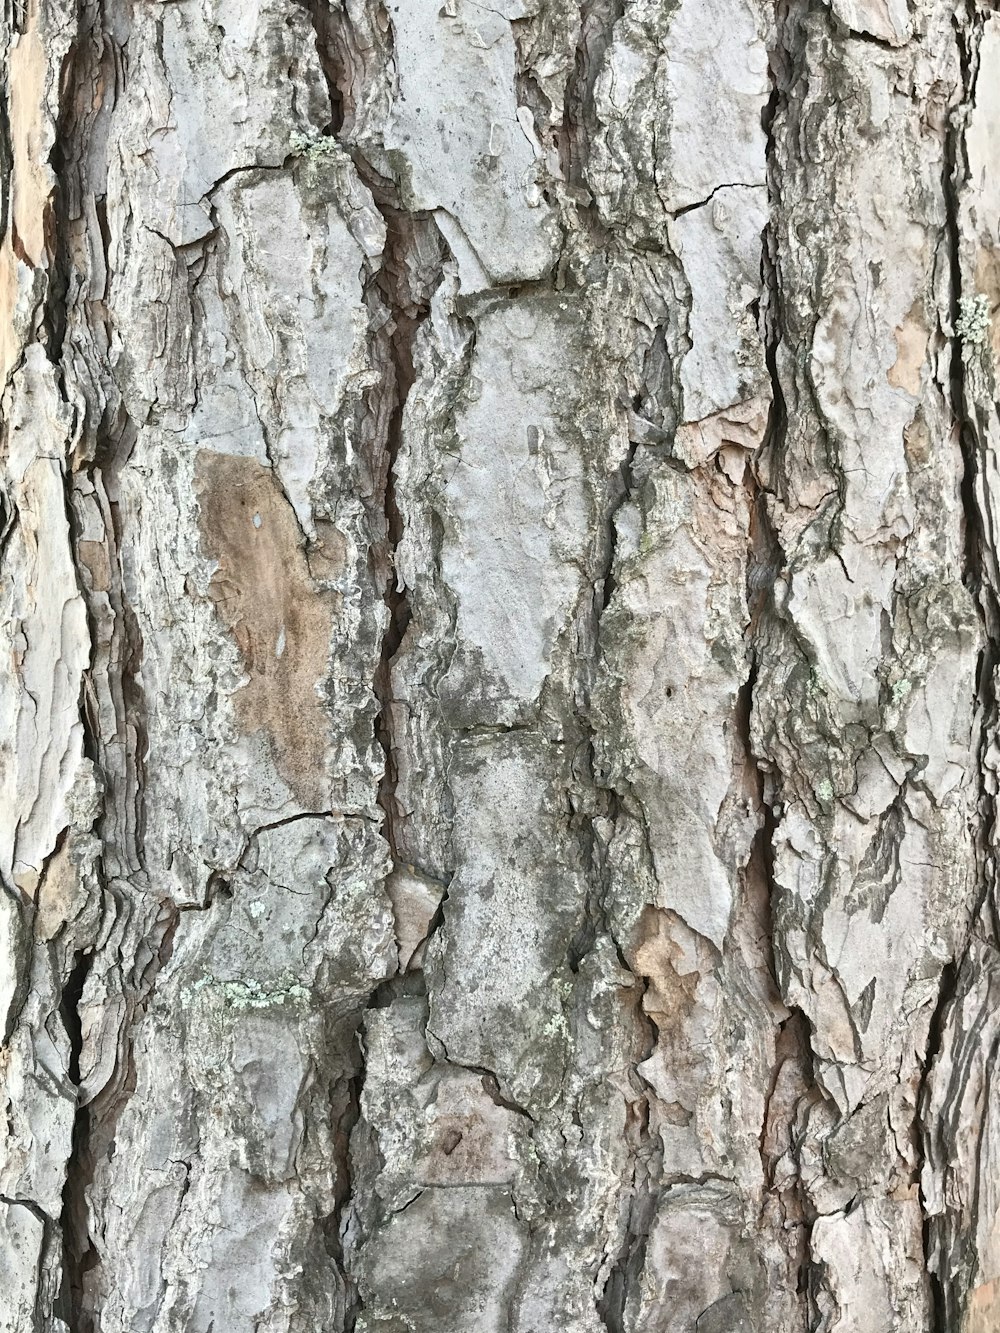 tronco de árvore marrom e verde